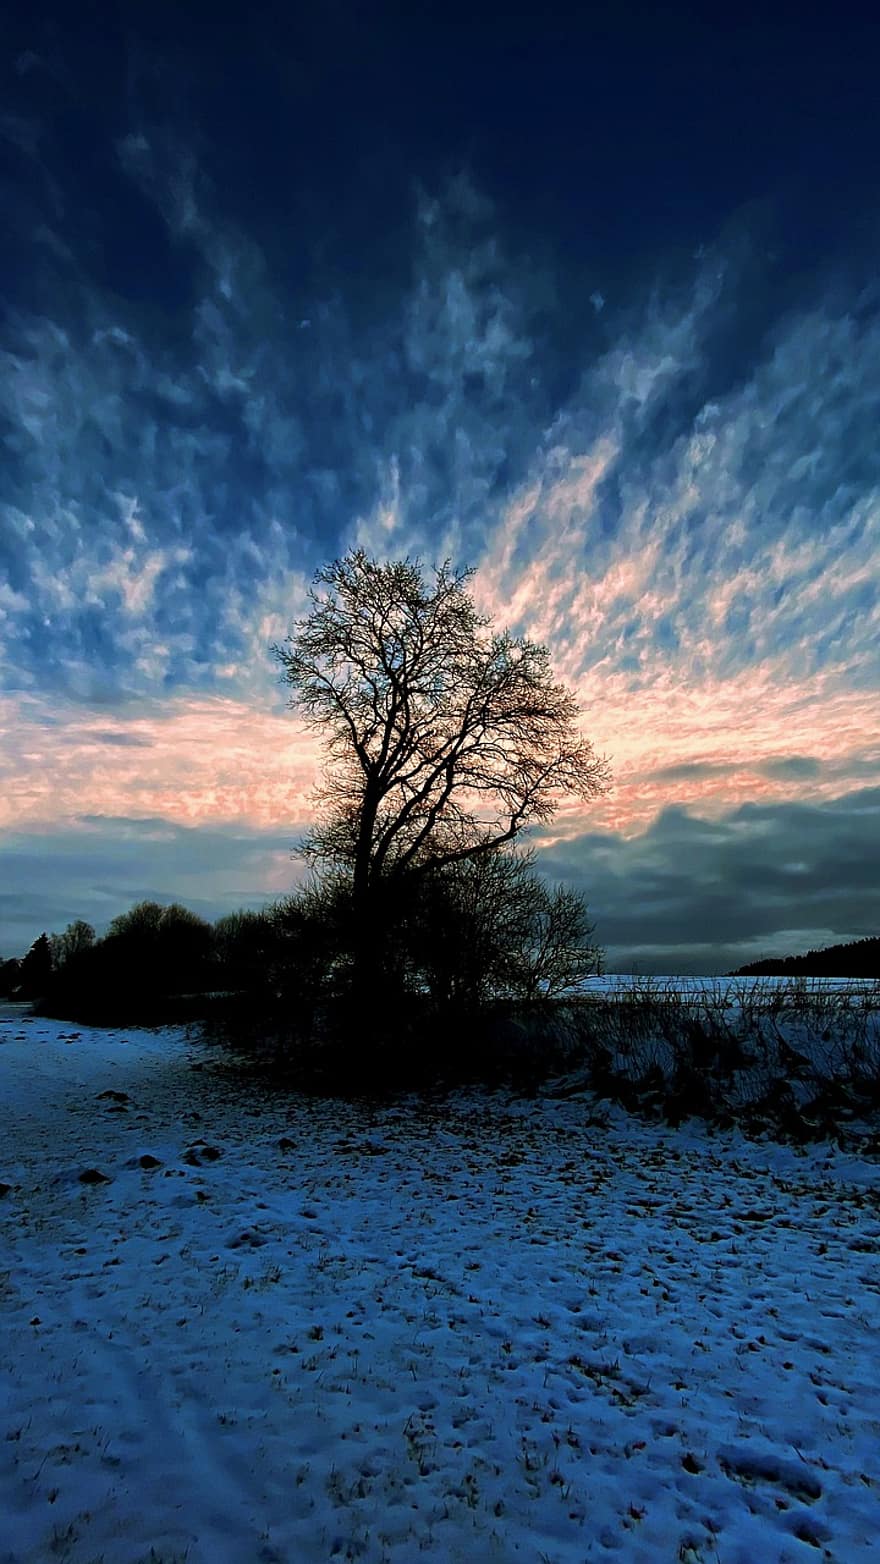 cây, phong cảnh mùa đông, mùa đông, tuyết, tâm trạng, bầu không khí buổi tối, thiên đường, những đám mây, Thiên nhiên, ánh sáng, màu xanh da trời